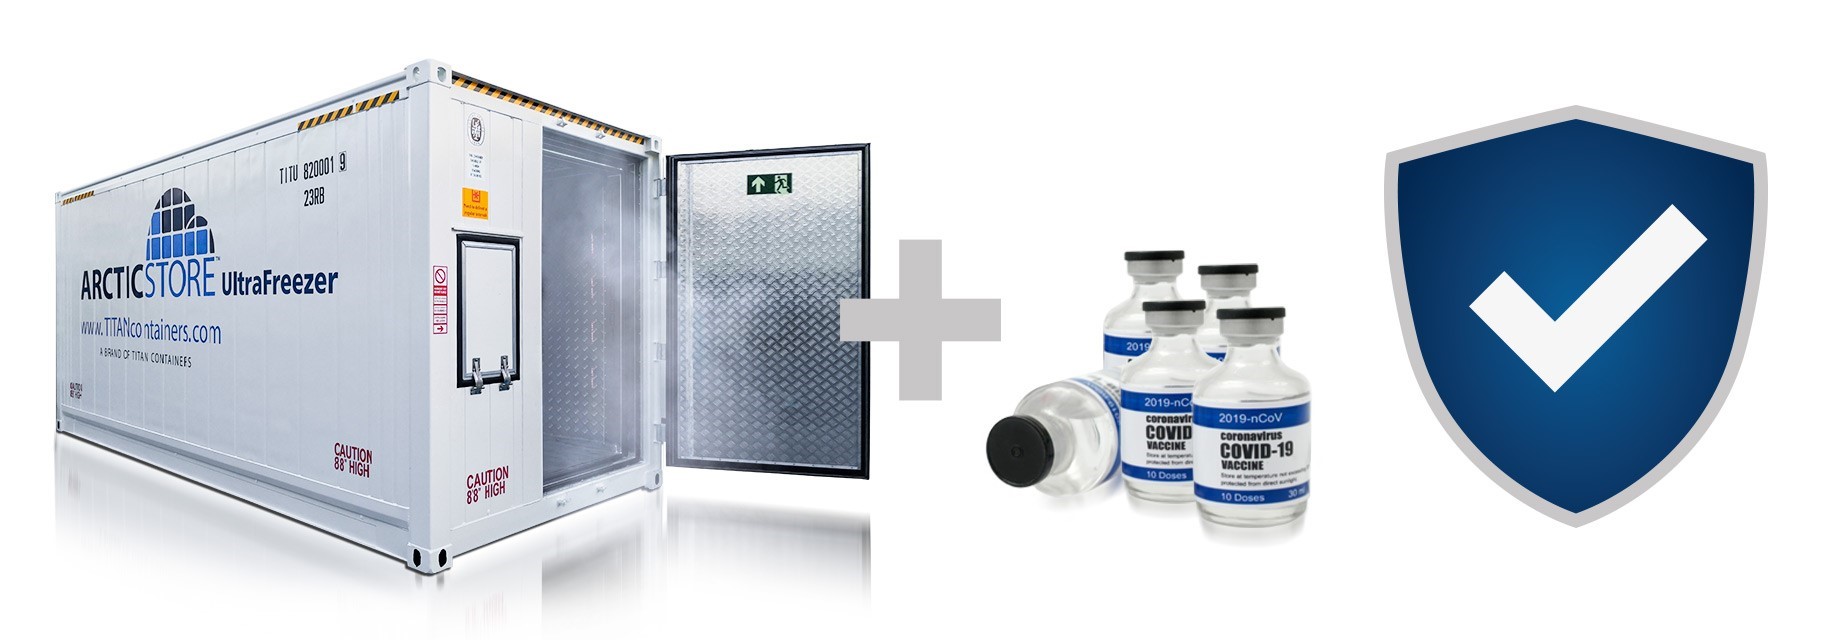 Pfizer-Biontech Vaccine Storage Solutions North West